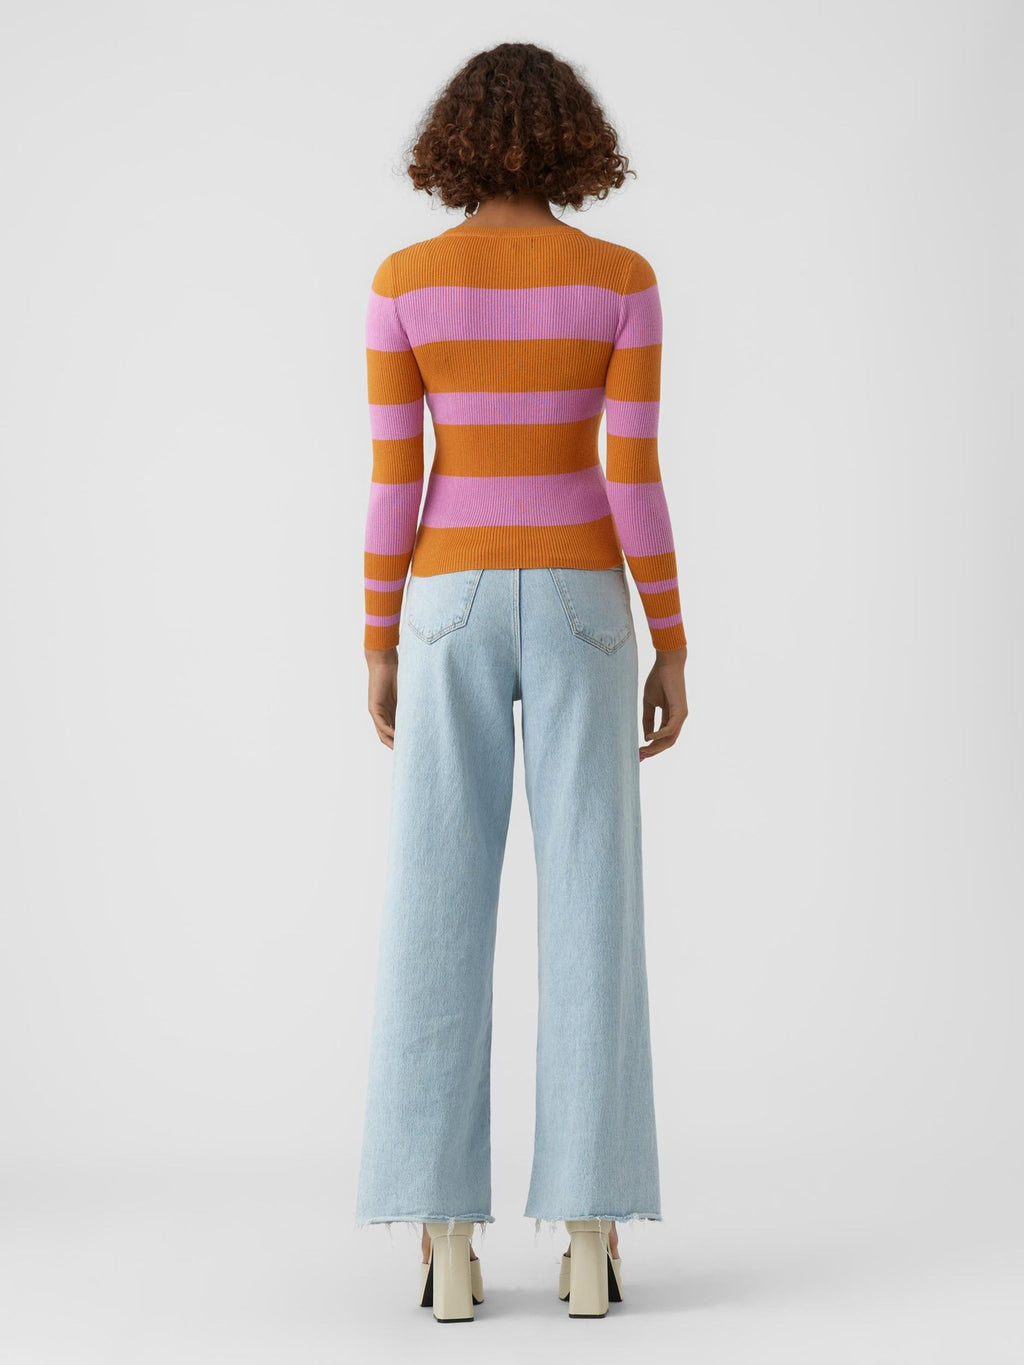 Alva Stripe Pullover - Nugget